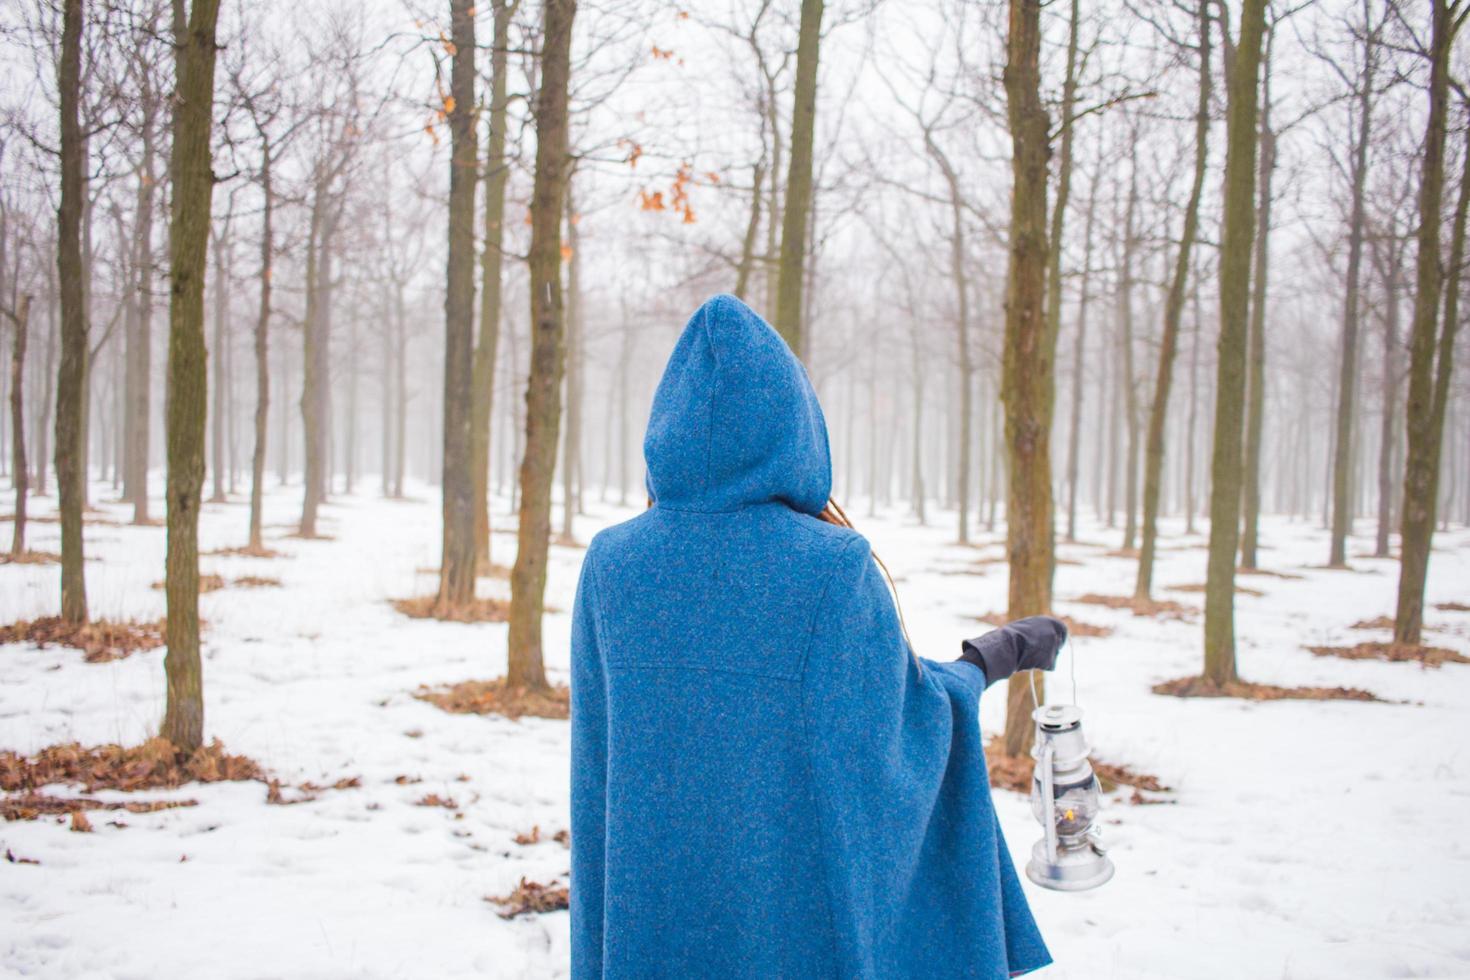 jonge vrouw in retro blauwe jas loopt in het mistige park in de winter, sneeuw en bomen achtergrond, fantasie of sprookjes concept foto